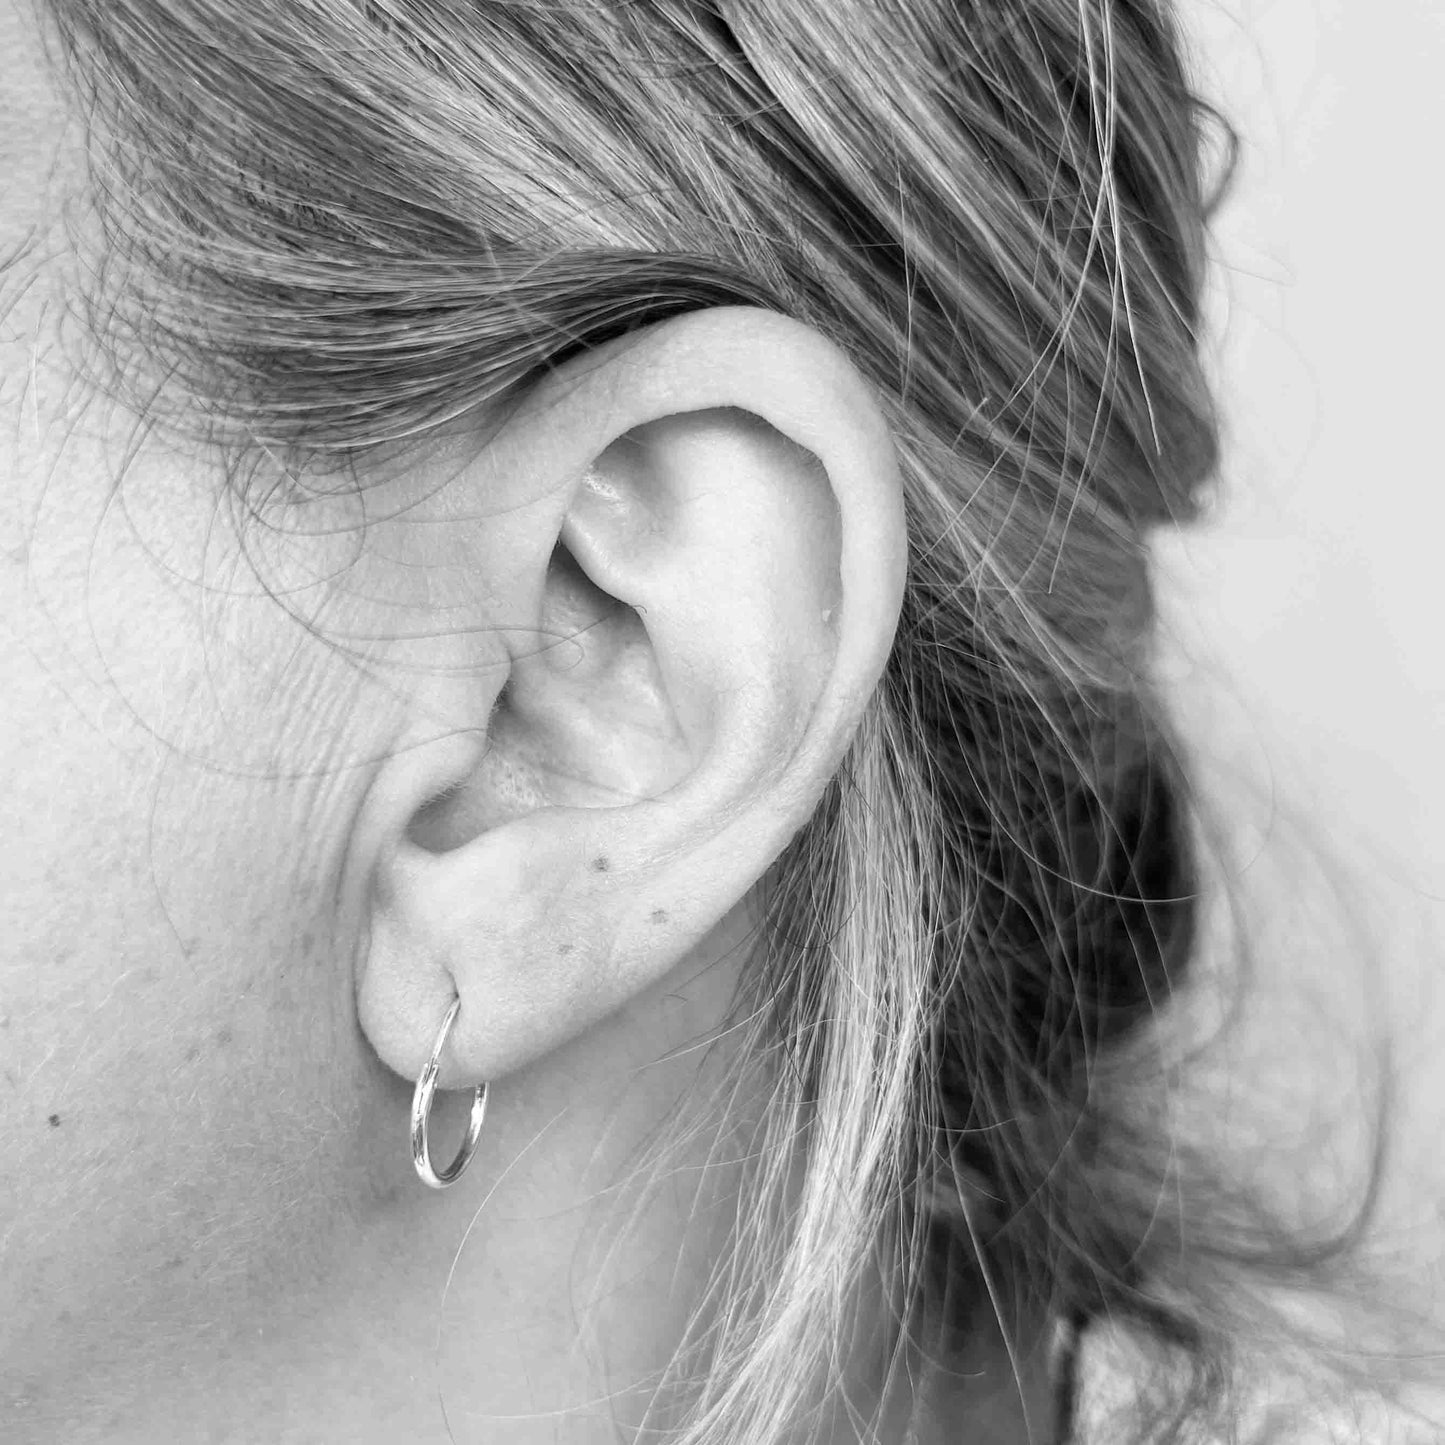 Silver Hoop Earrings 12mm